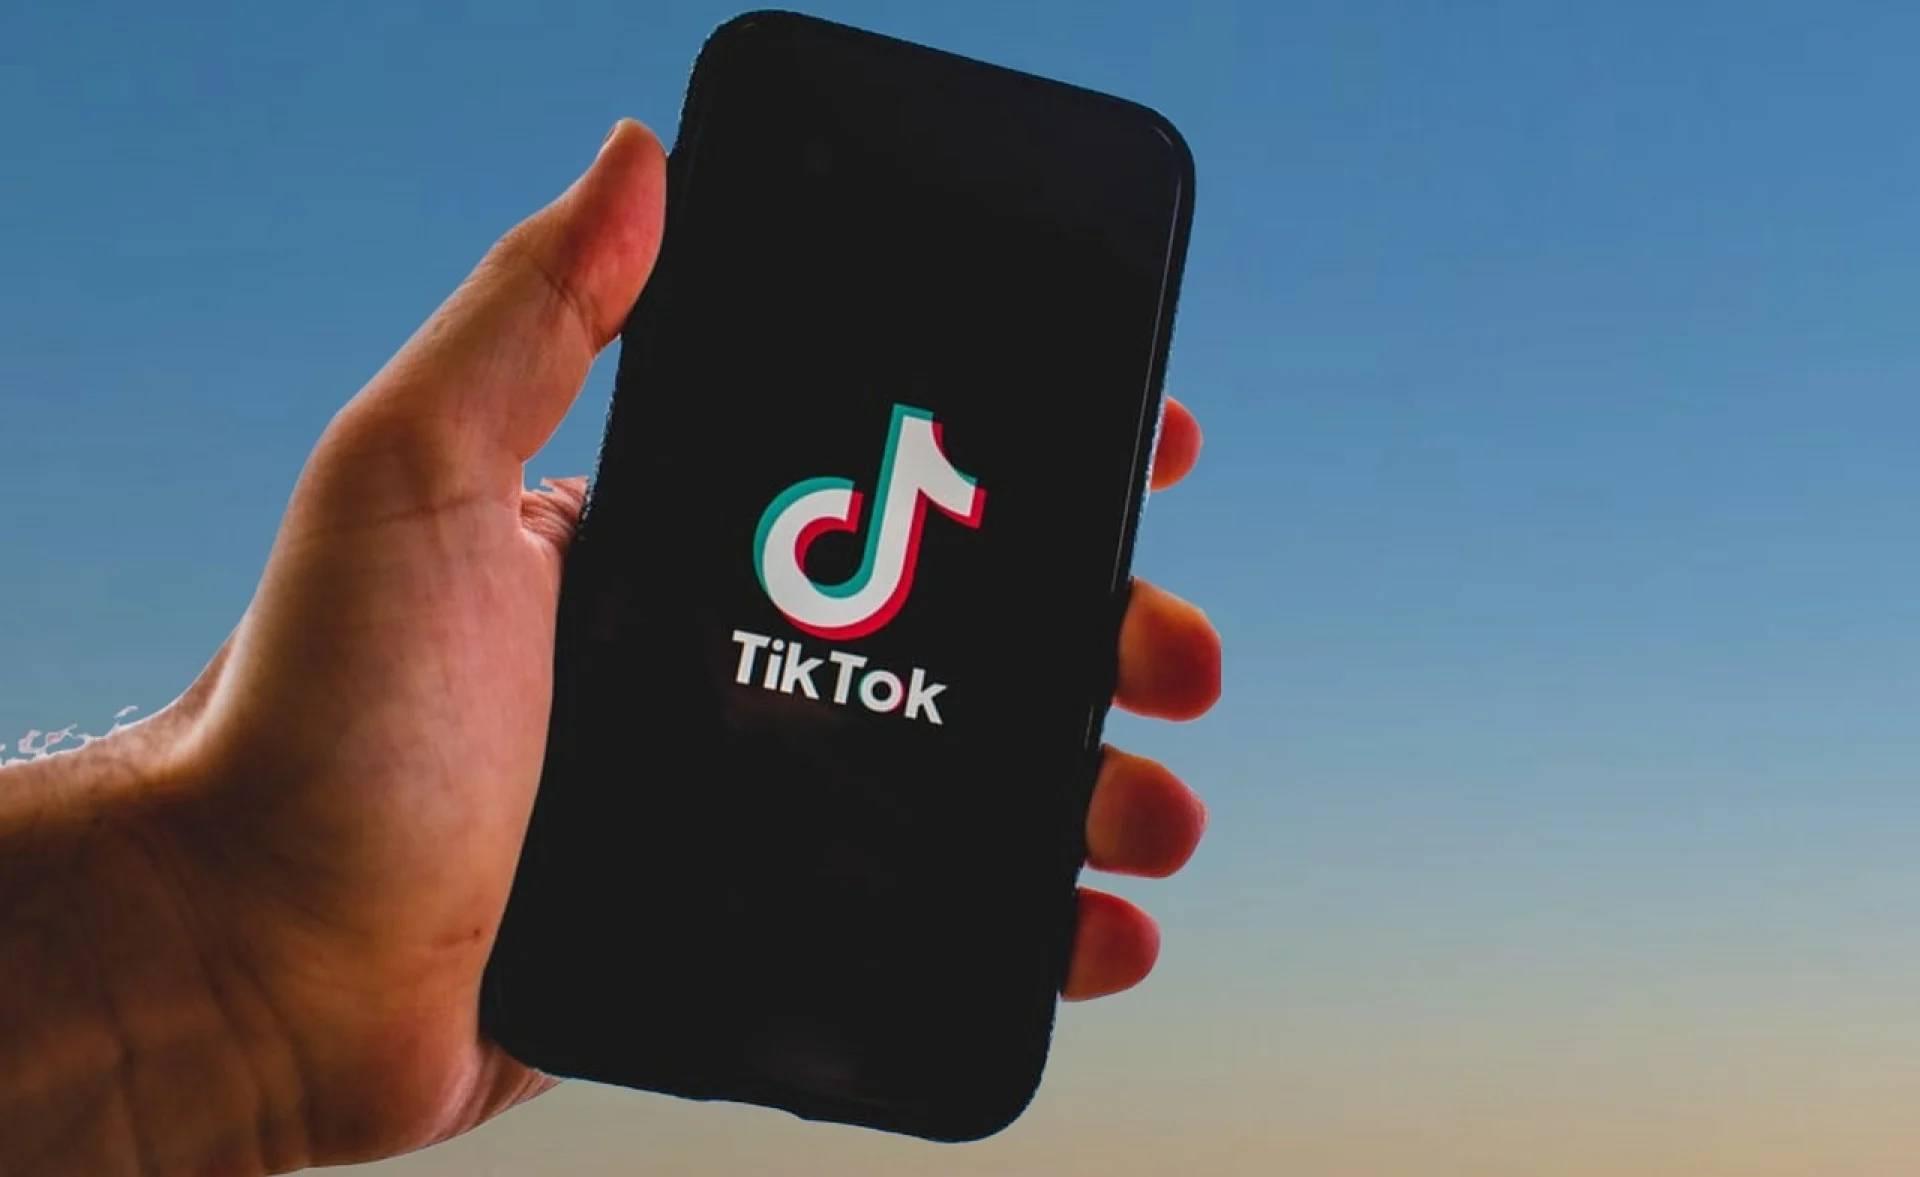 Mão segurando um celular que contém o logo do tiktok. O logo é preto e branco